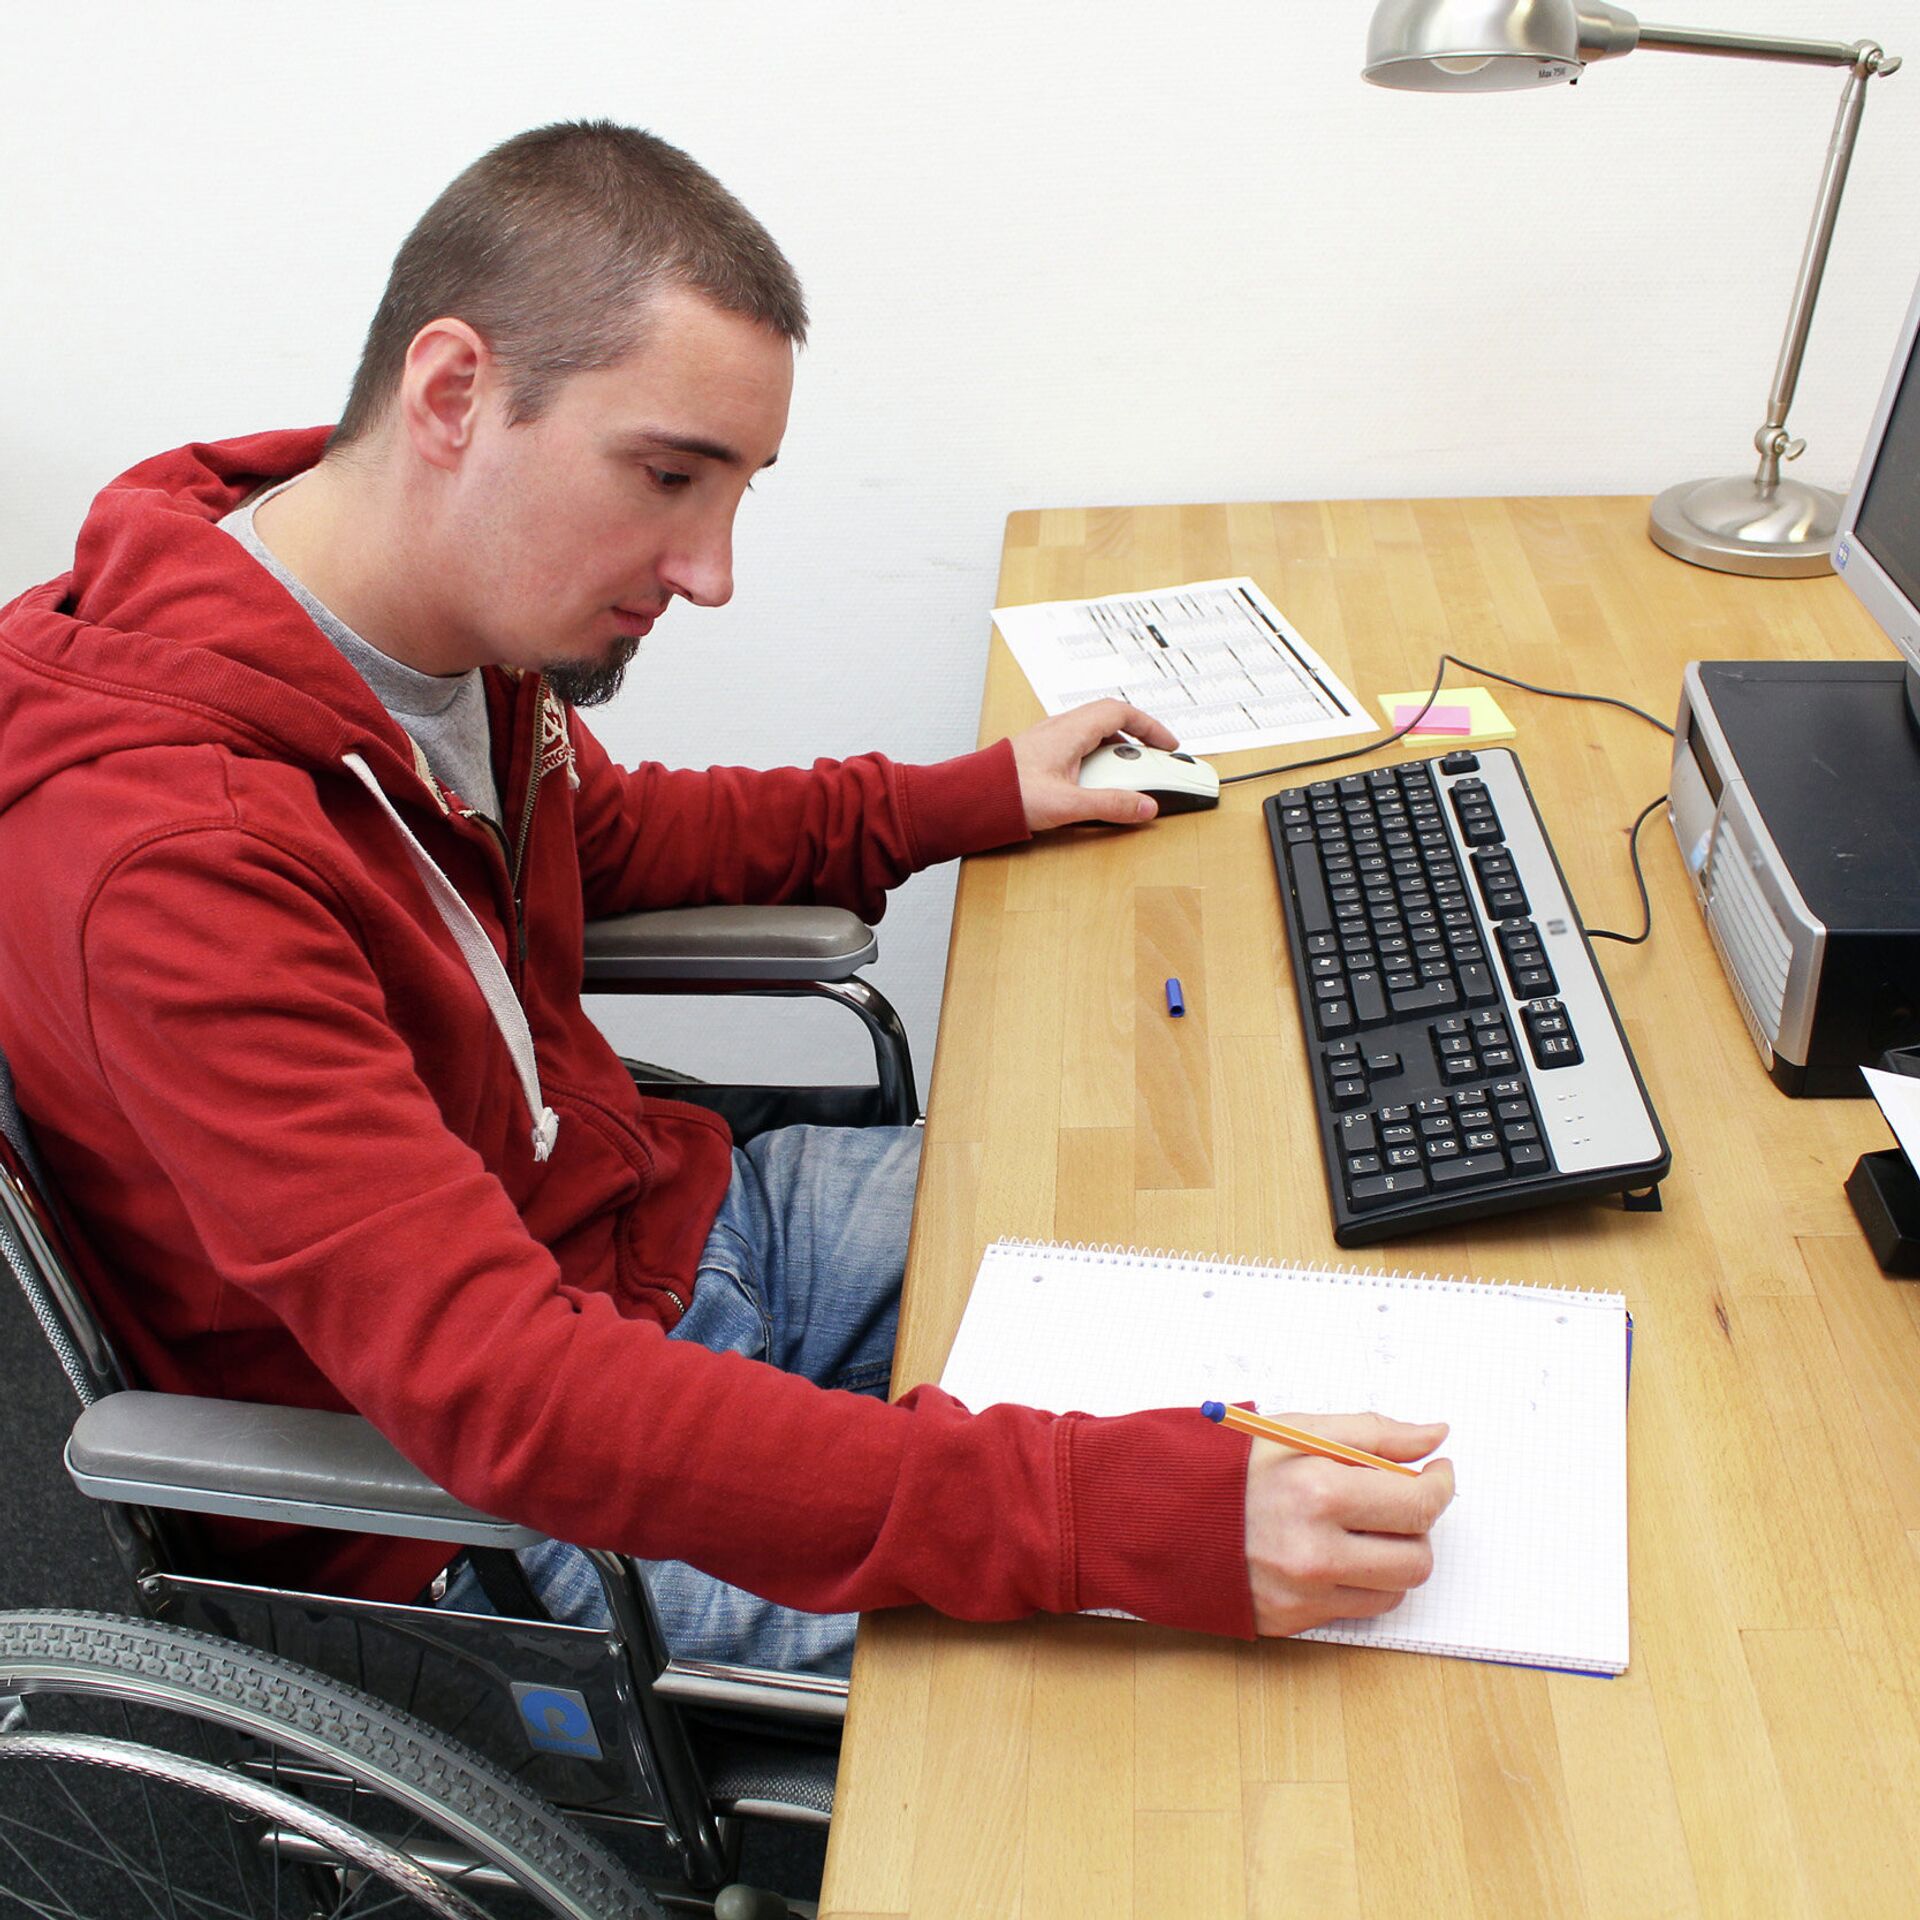 Парни на рабочем месте. Инвалид за компьютером. Людей с ограниченными возможностями компьютер. Рабочие места для инвалидов. Человек за компьютером.